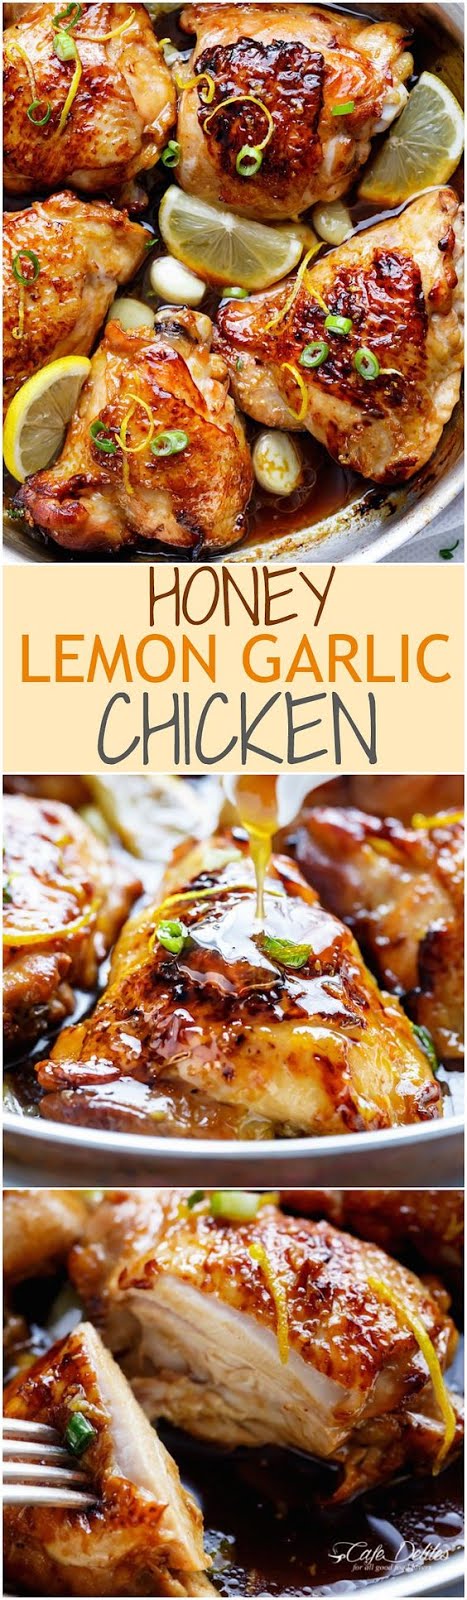 Honey Lemon Garlic Chicken - TOP MOTHER RECIPES